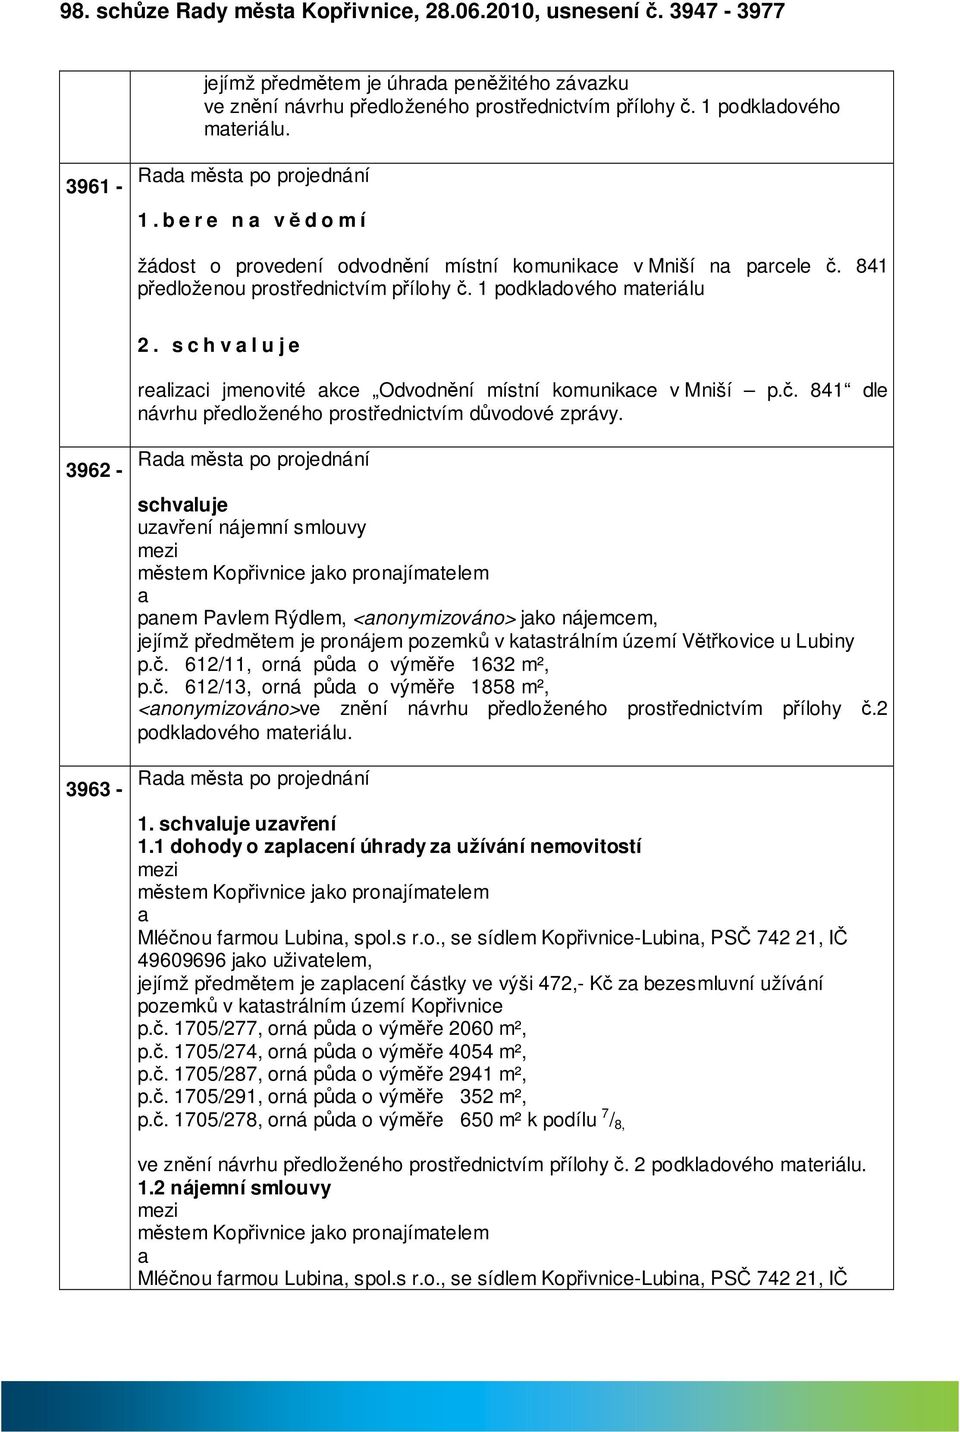 relizci jmenovité kce Odvodnění místní komunikce v Mniší p.č. 841 dle návrhu předloženého prostřednictvím důvodové zprávy.